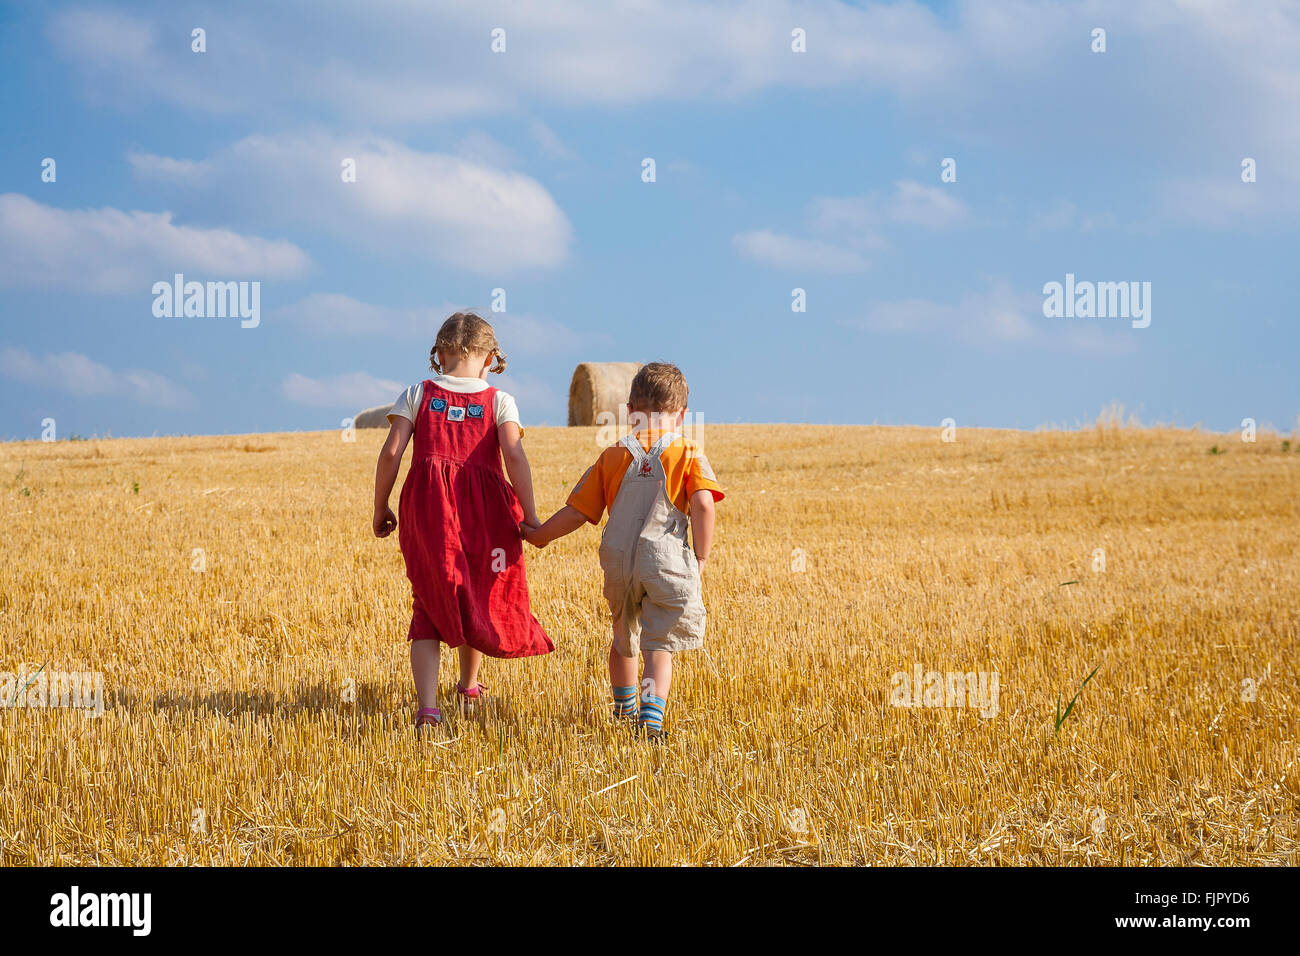 Mädchen und jungen halten einander die Hände und gehen auf einem großen Stoppelfeld, Deutschland Stockfoto